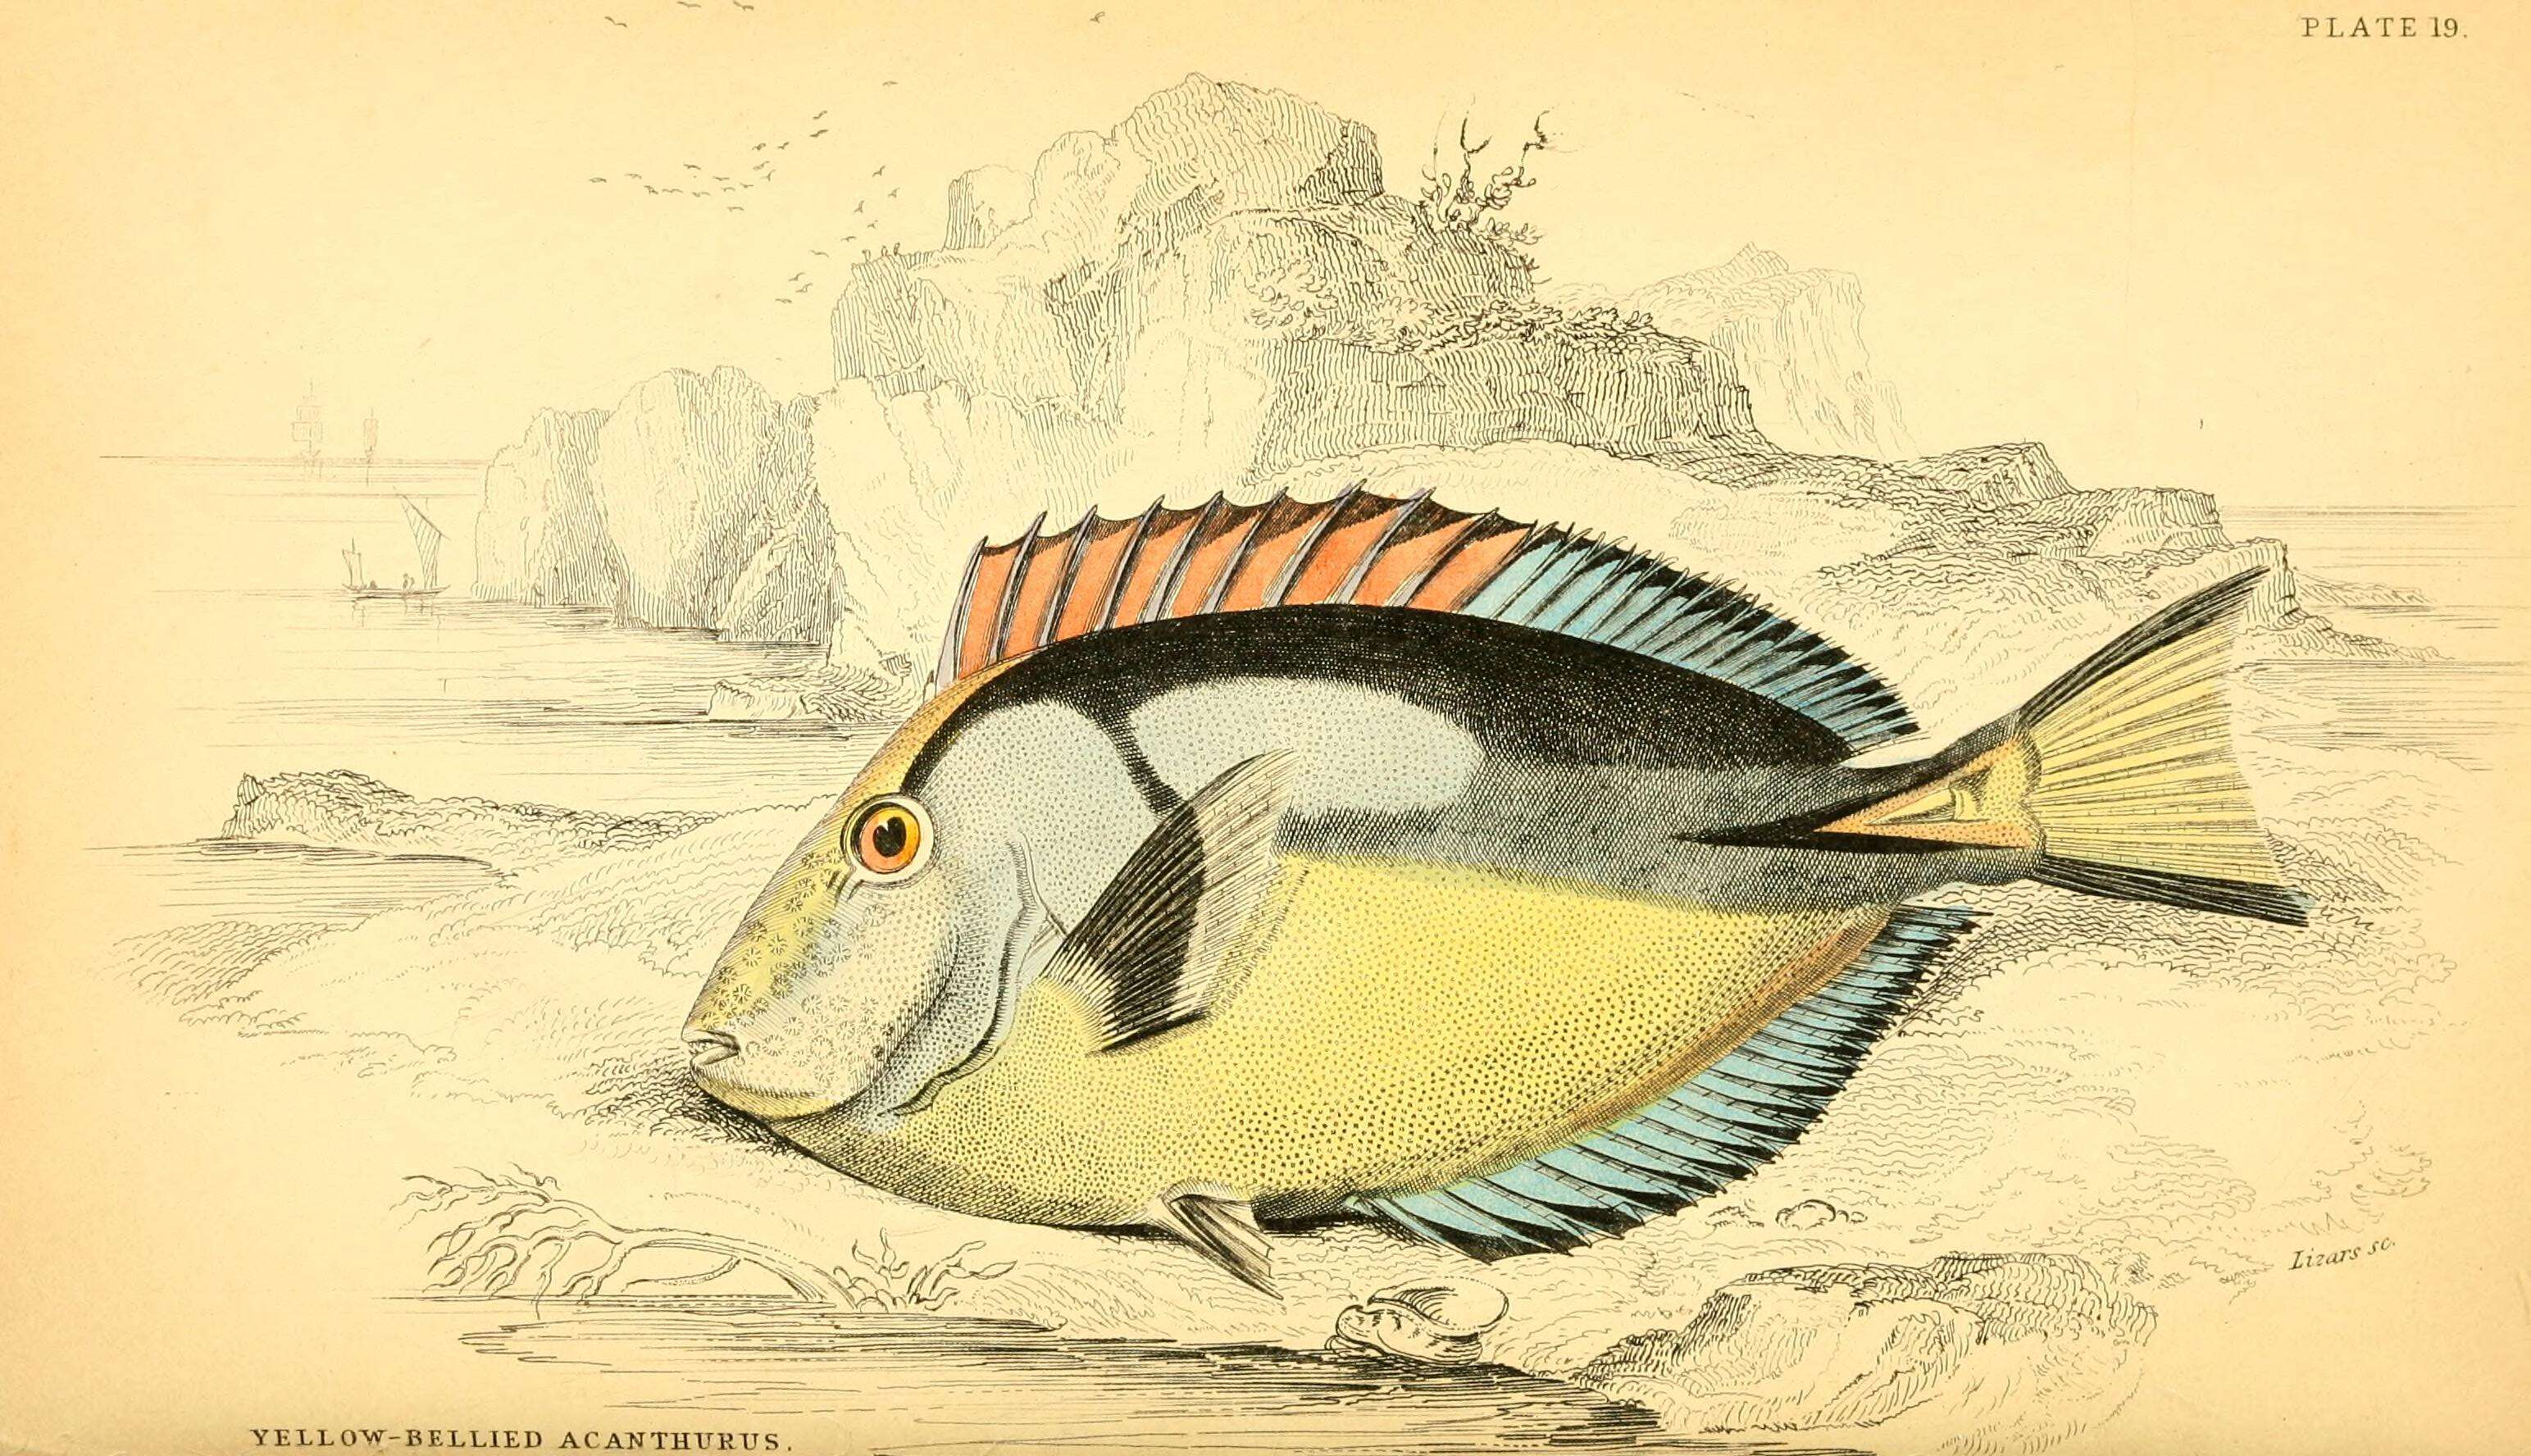 Image of Paracanthurus